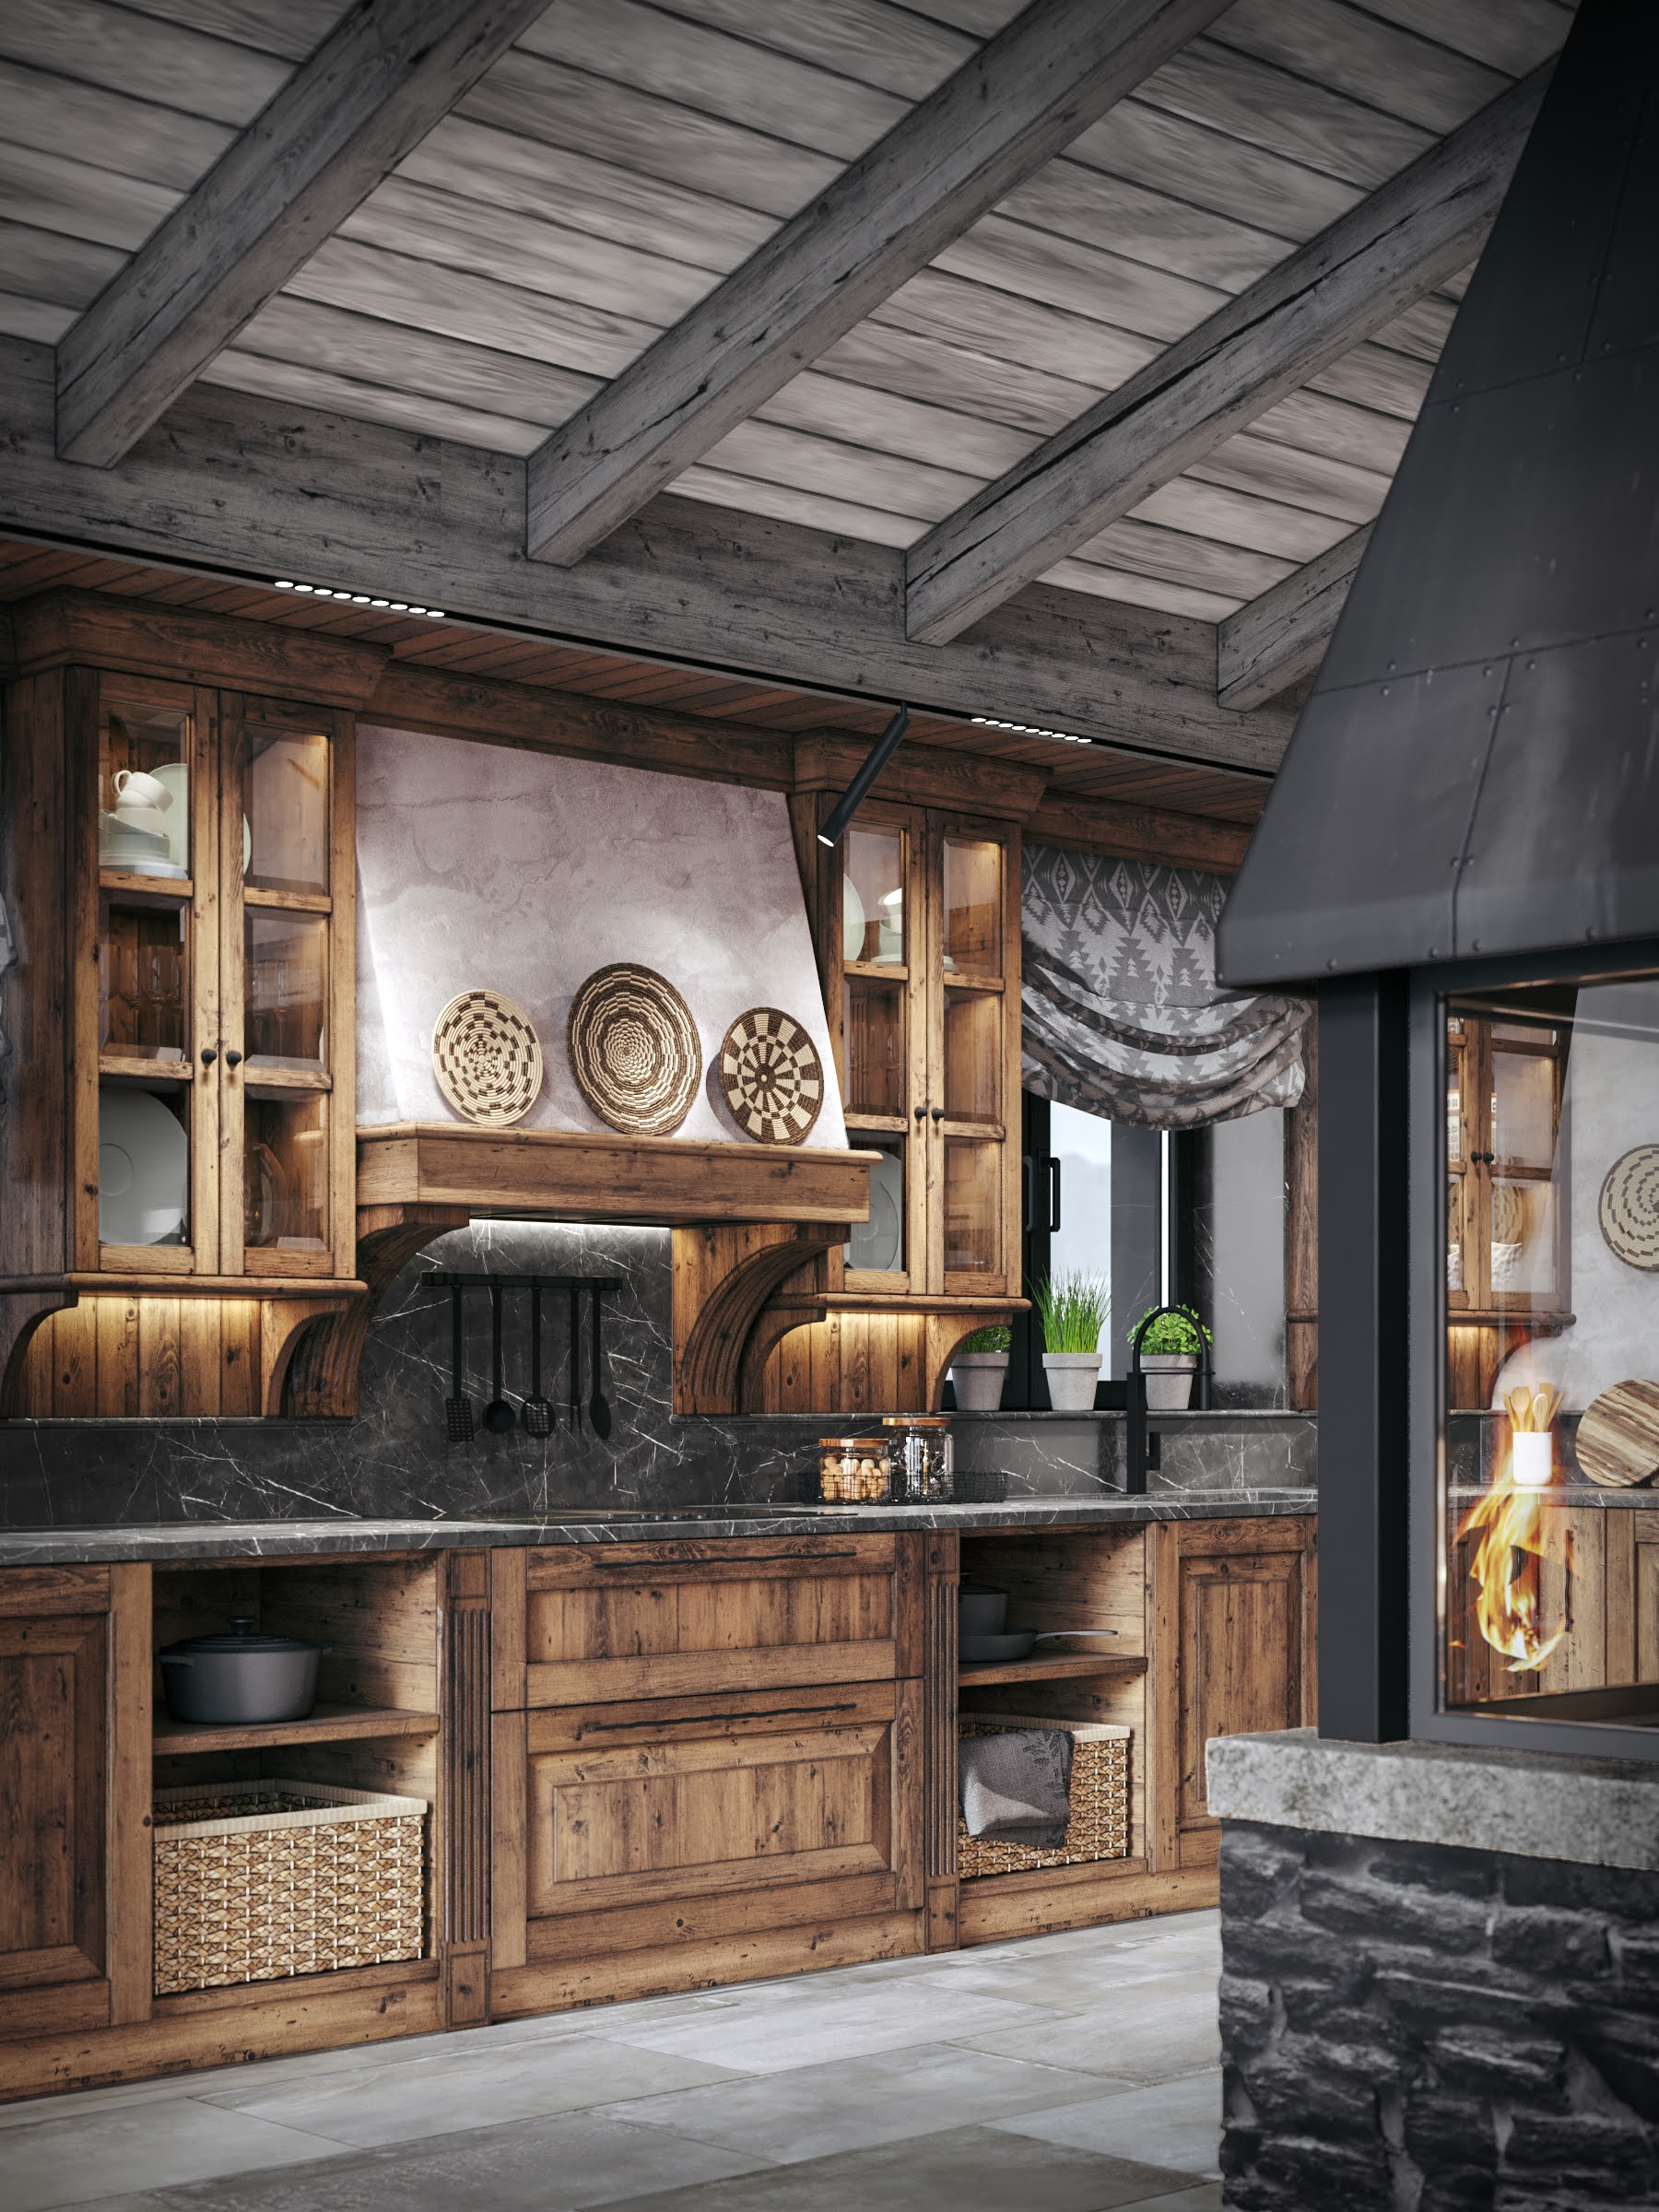 Chalet style kitchen interior